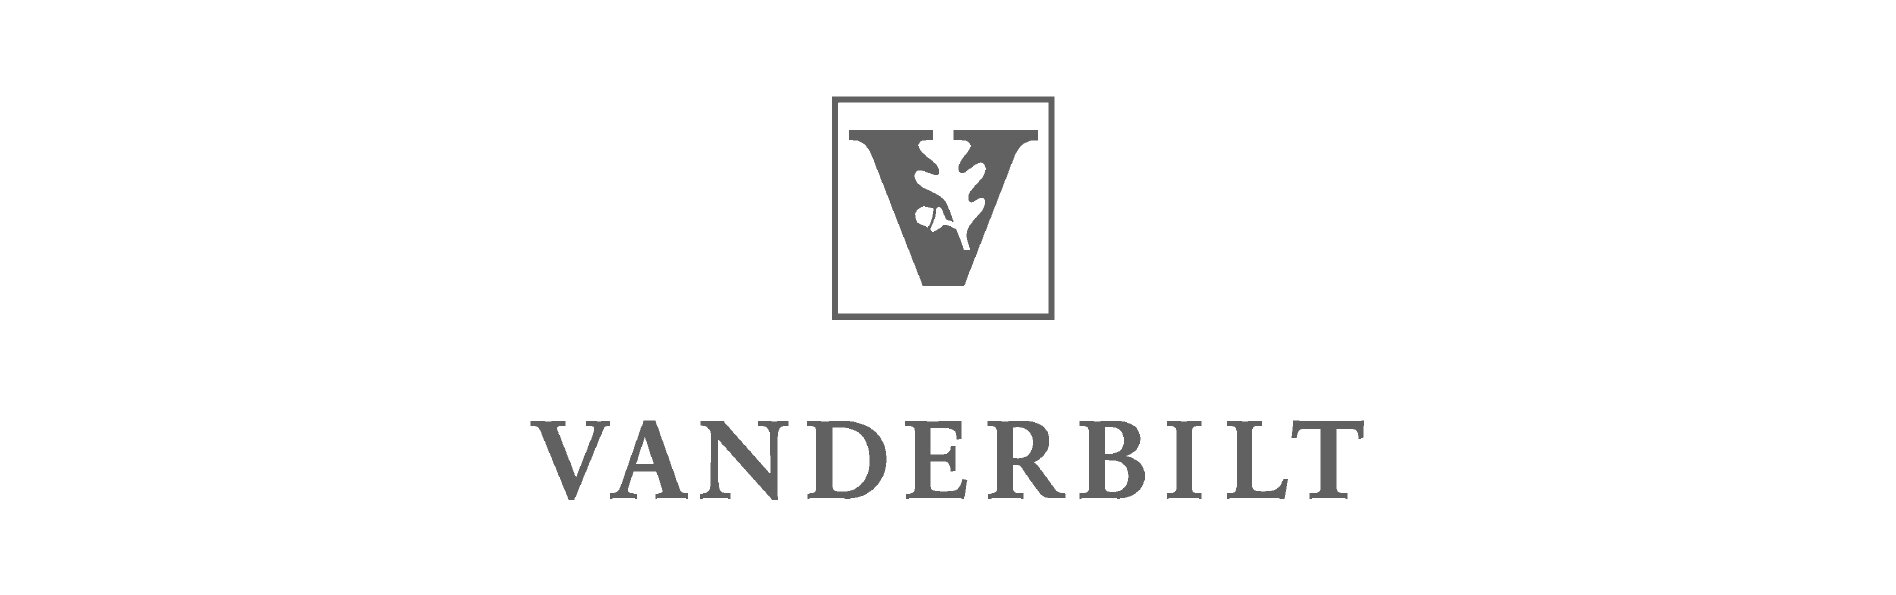 Vanderbilt Logo.jpg